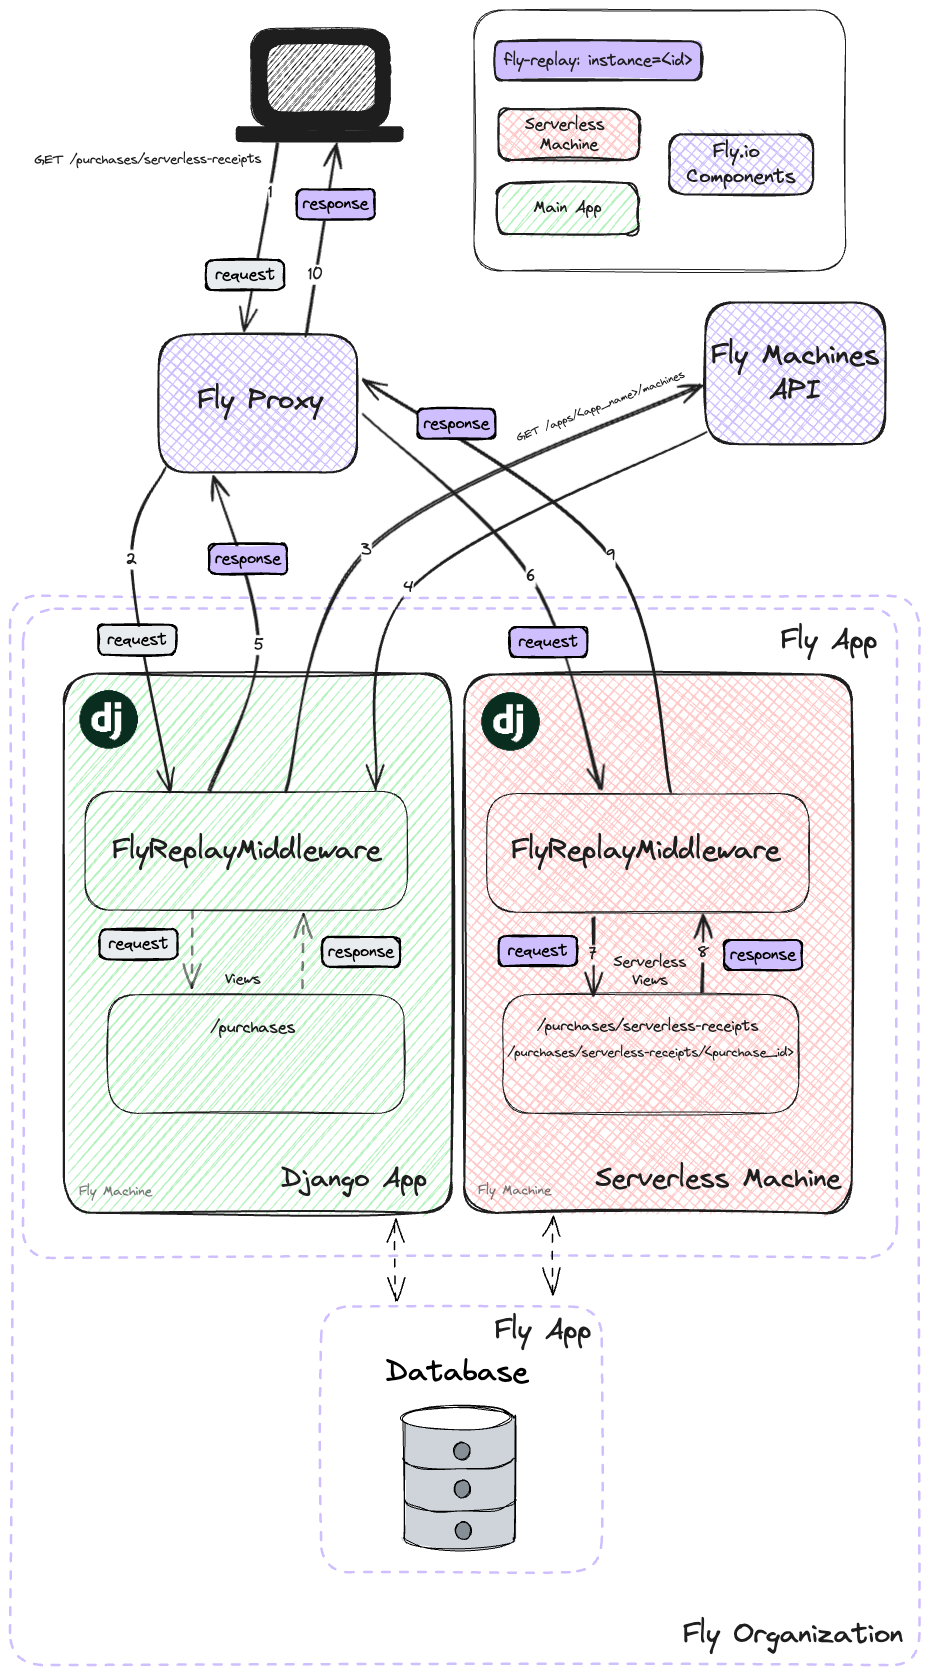 Diagram: Django Views as Serverless Functions on Fly Machines